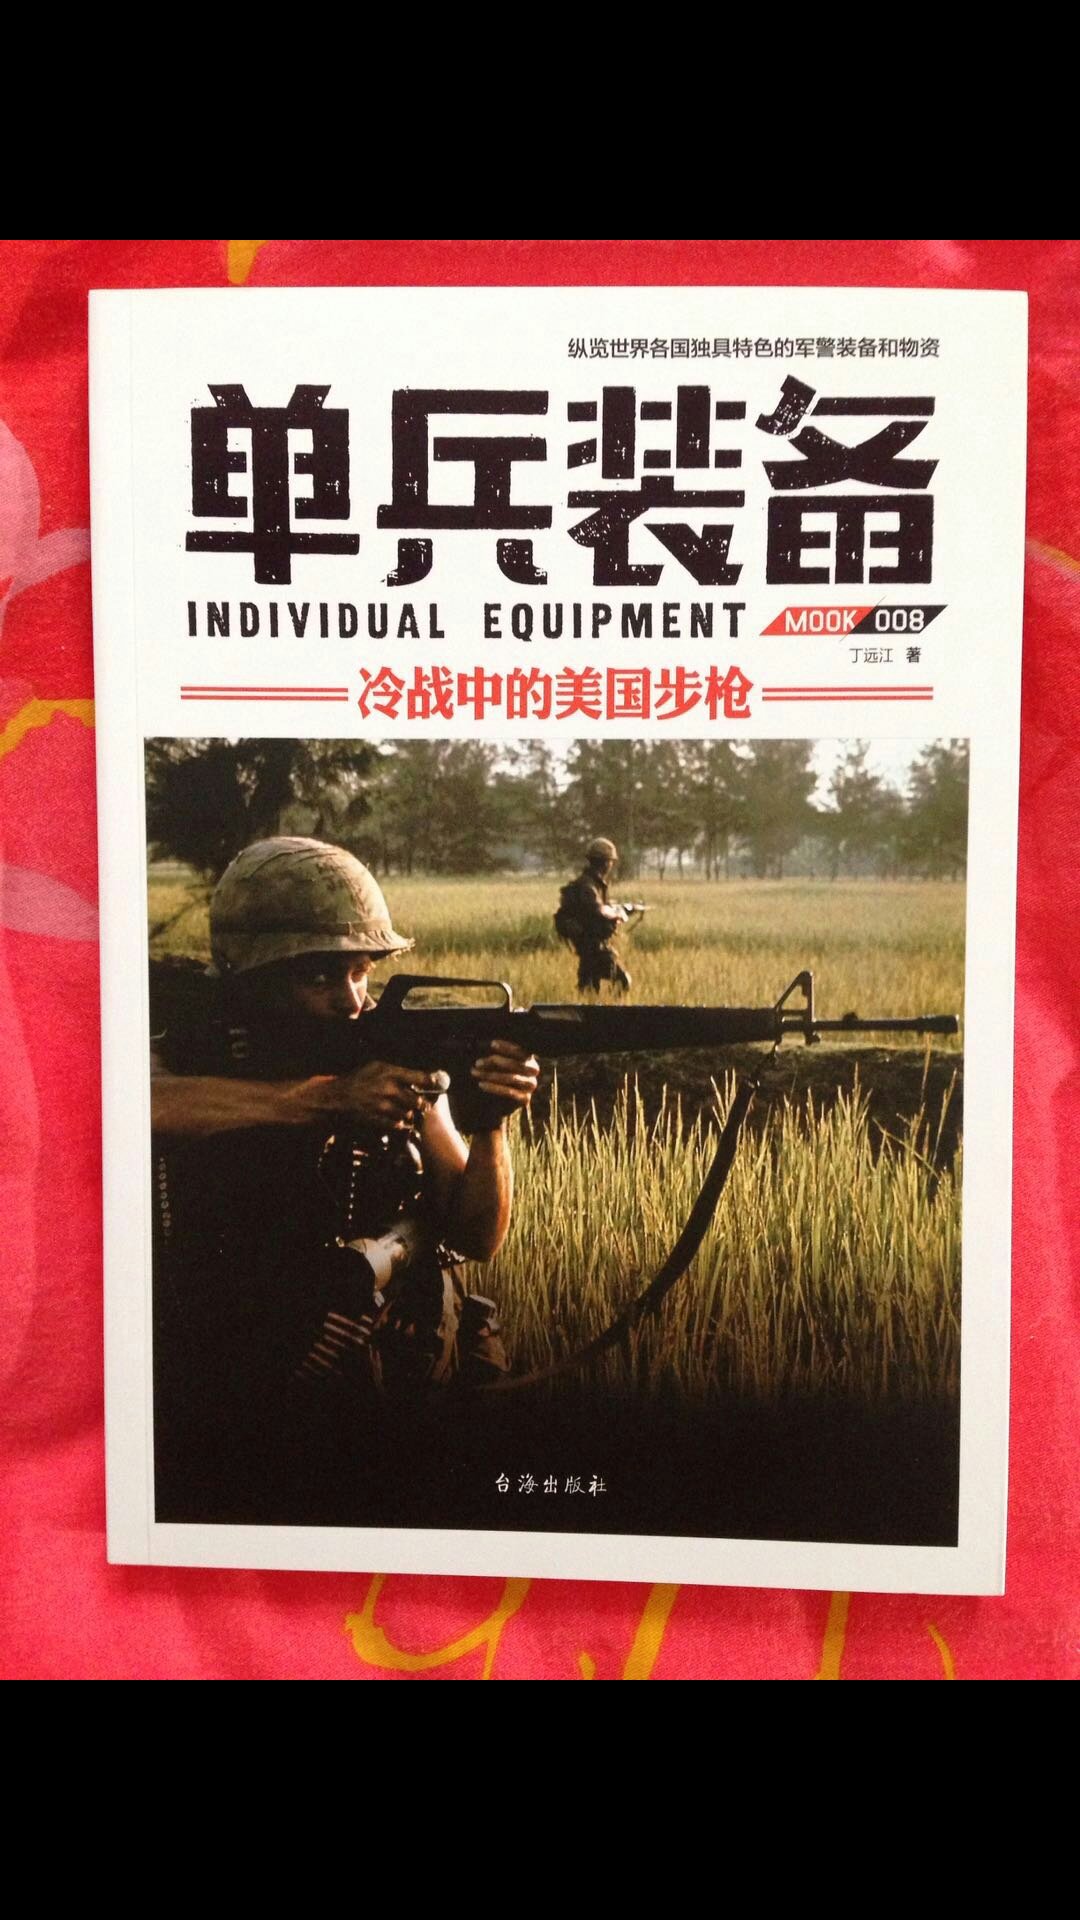 指文出品的书很不错，喜欢军事的朋友可以购买！